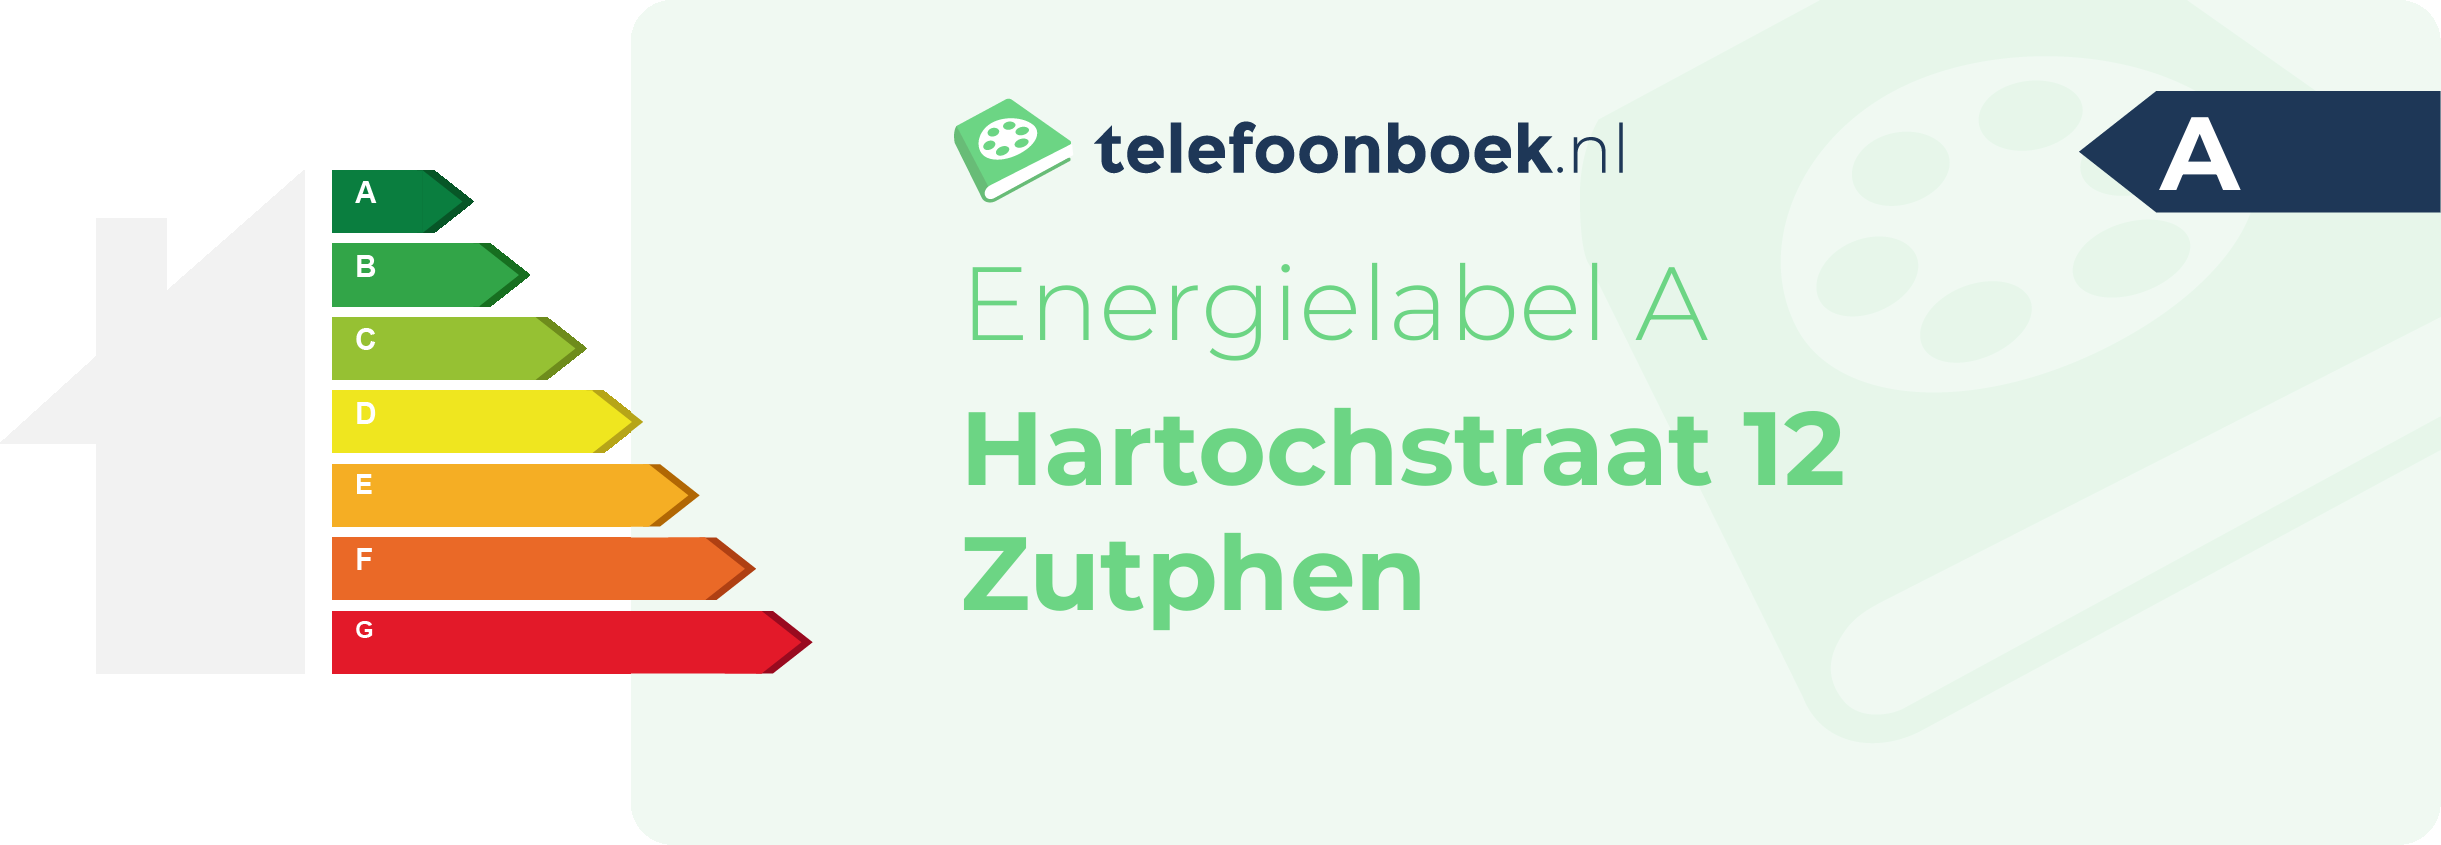 Energielabel Hartochstraat 12 Zutphen